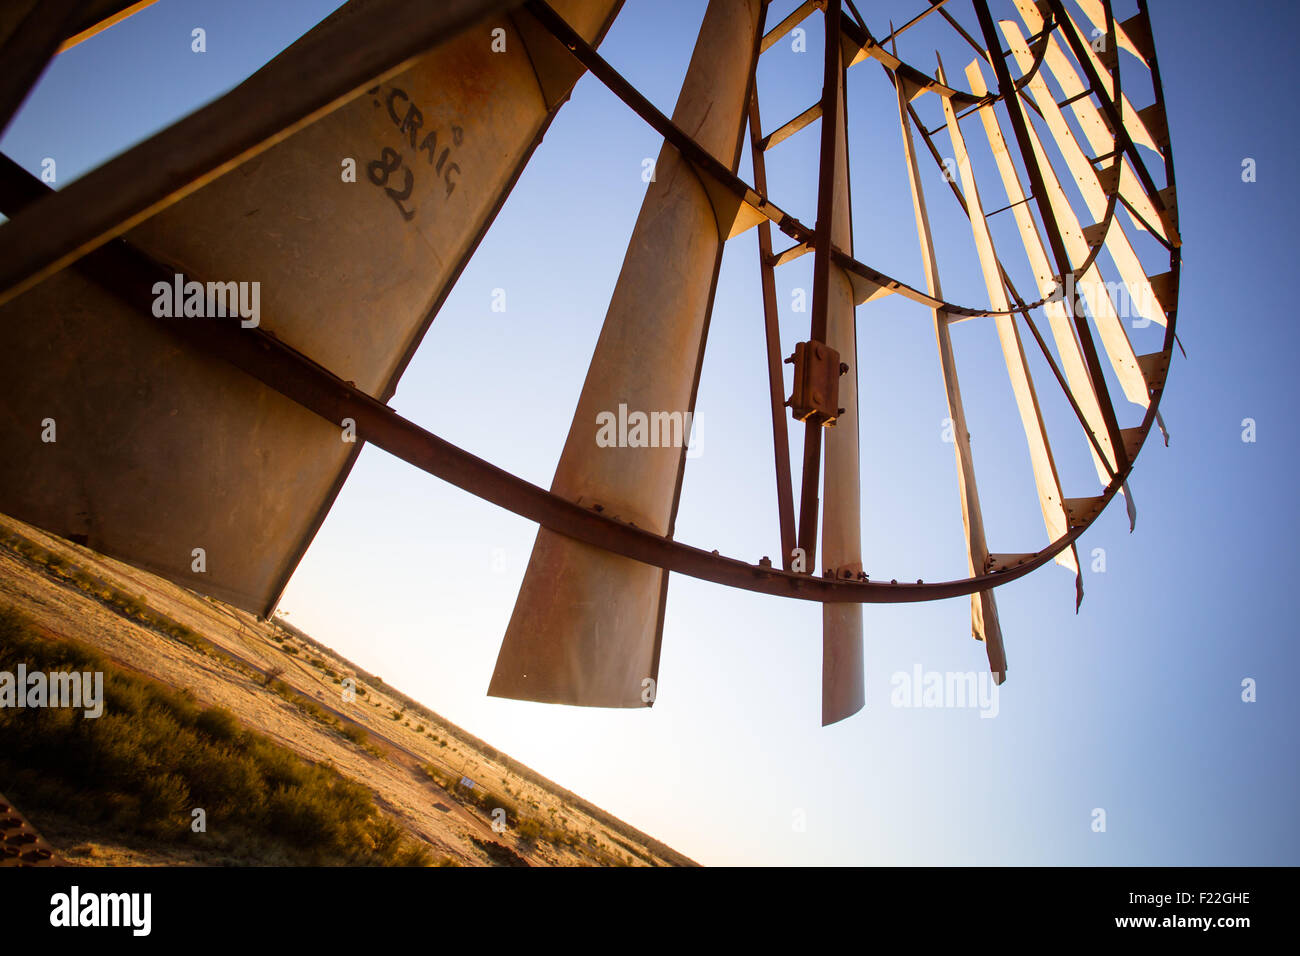 Einer alten stillgelegten Windmühle im Morgengrauen in der Nähe von Gemtree, Northern Territory, Australien Stockfoto